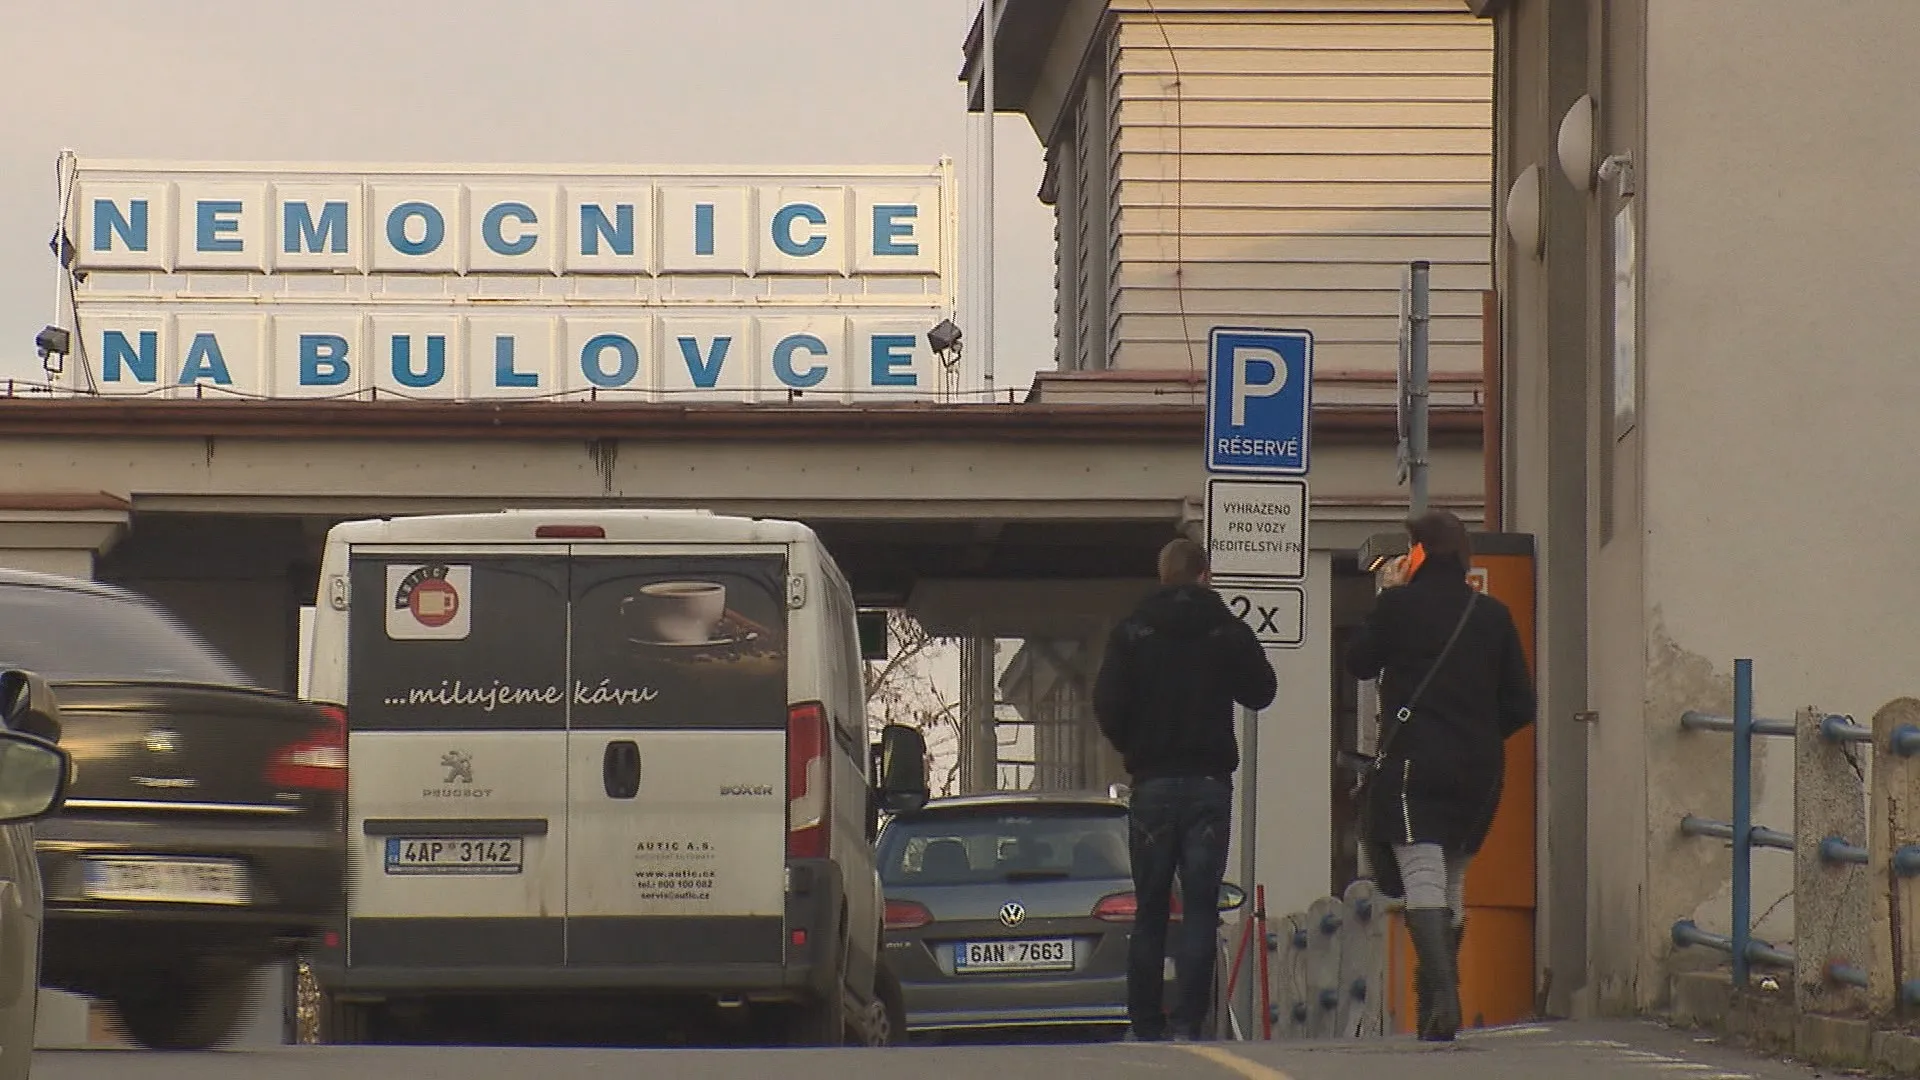 Policie hledá ženy, které zaměnili na pražské Bulovce. Jedna z nich přišla o dítě